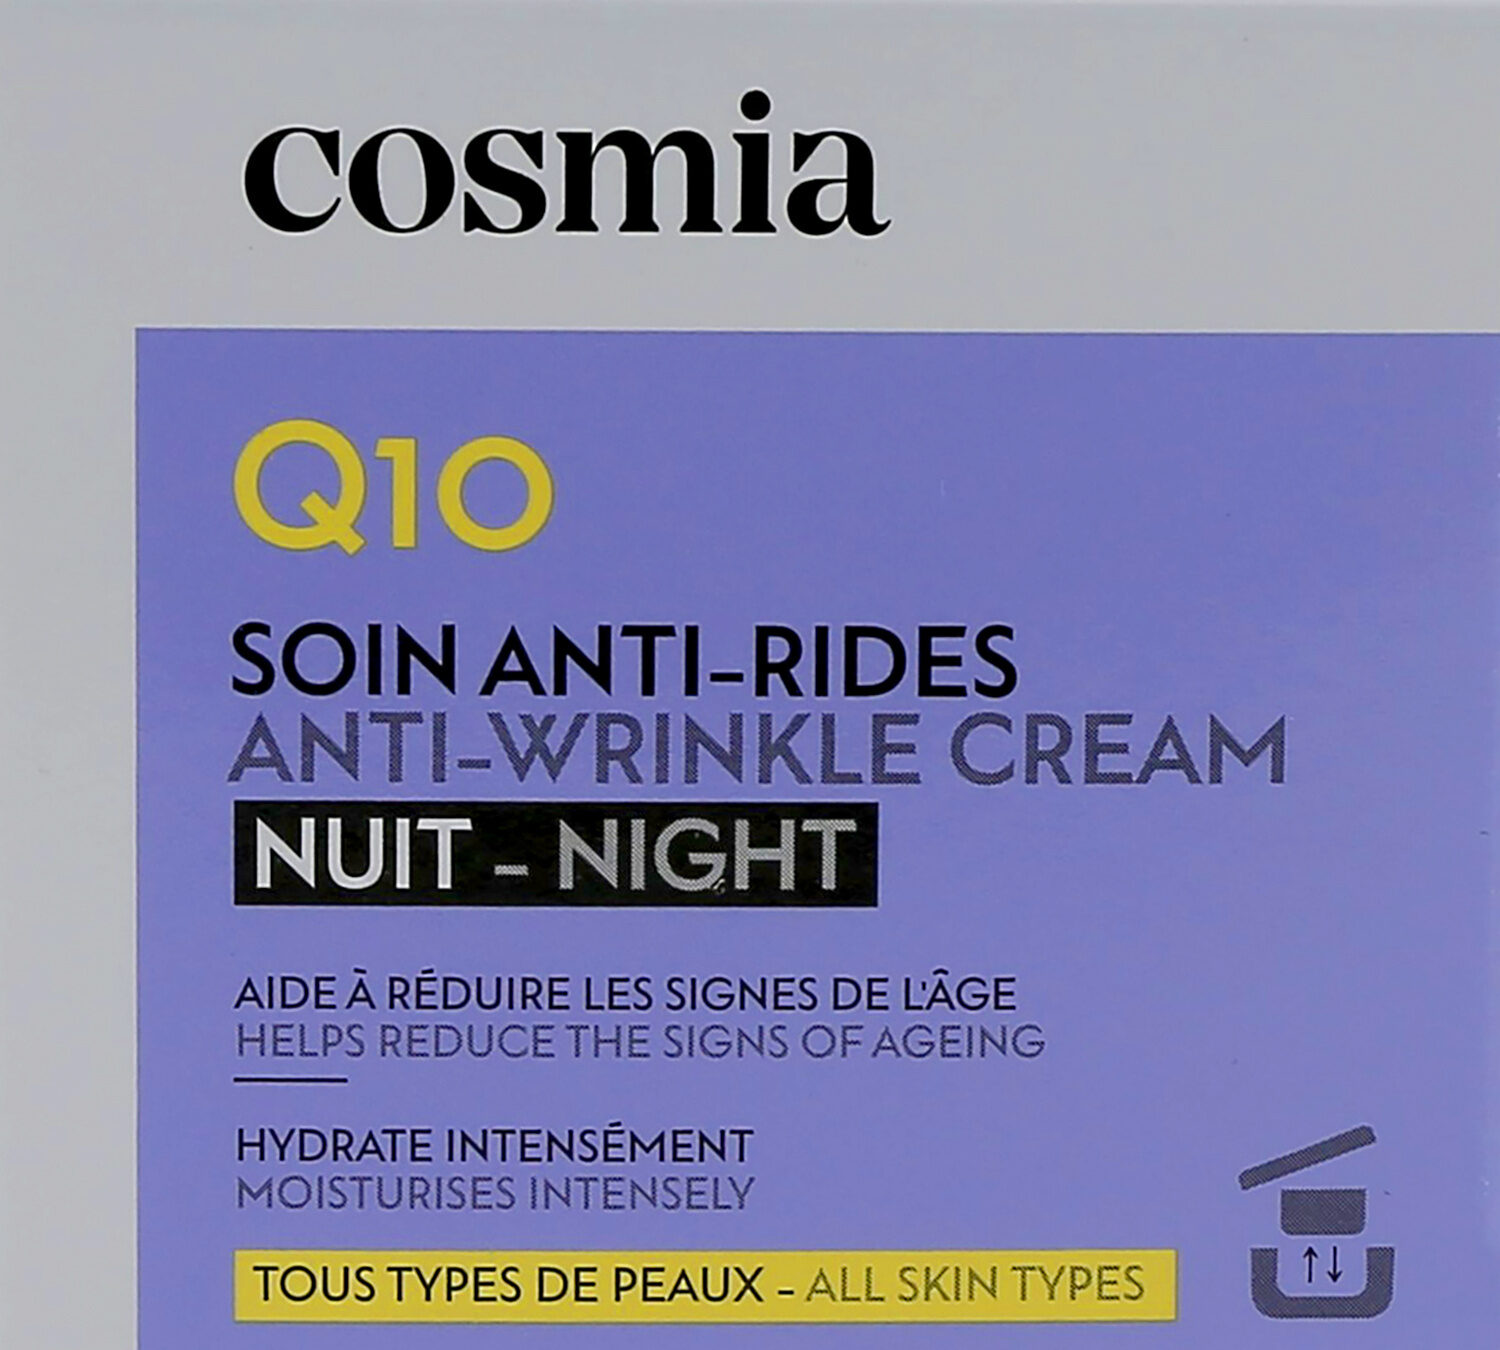 Cosmia creme nuit - anti ride - q10 50ml - Produktas - fr